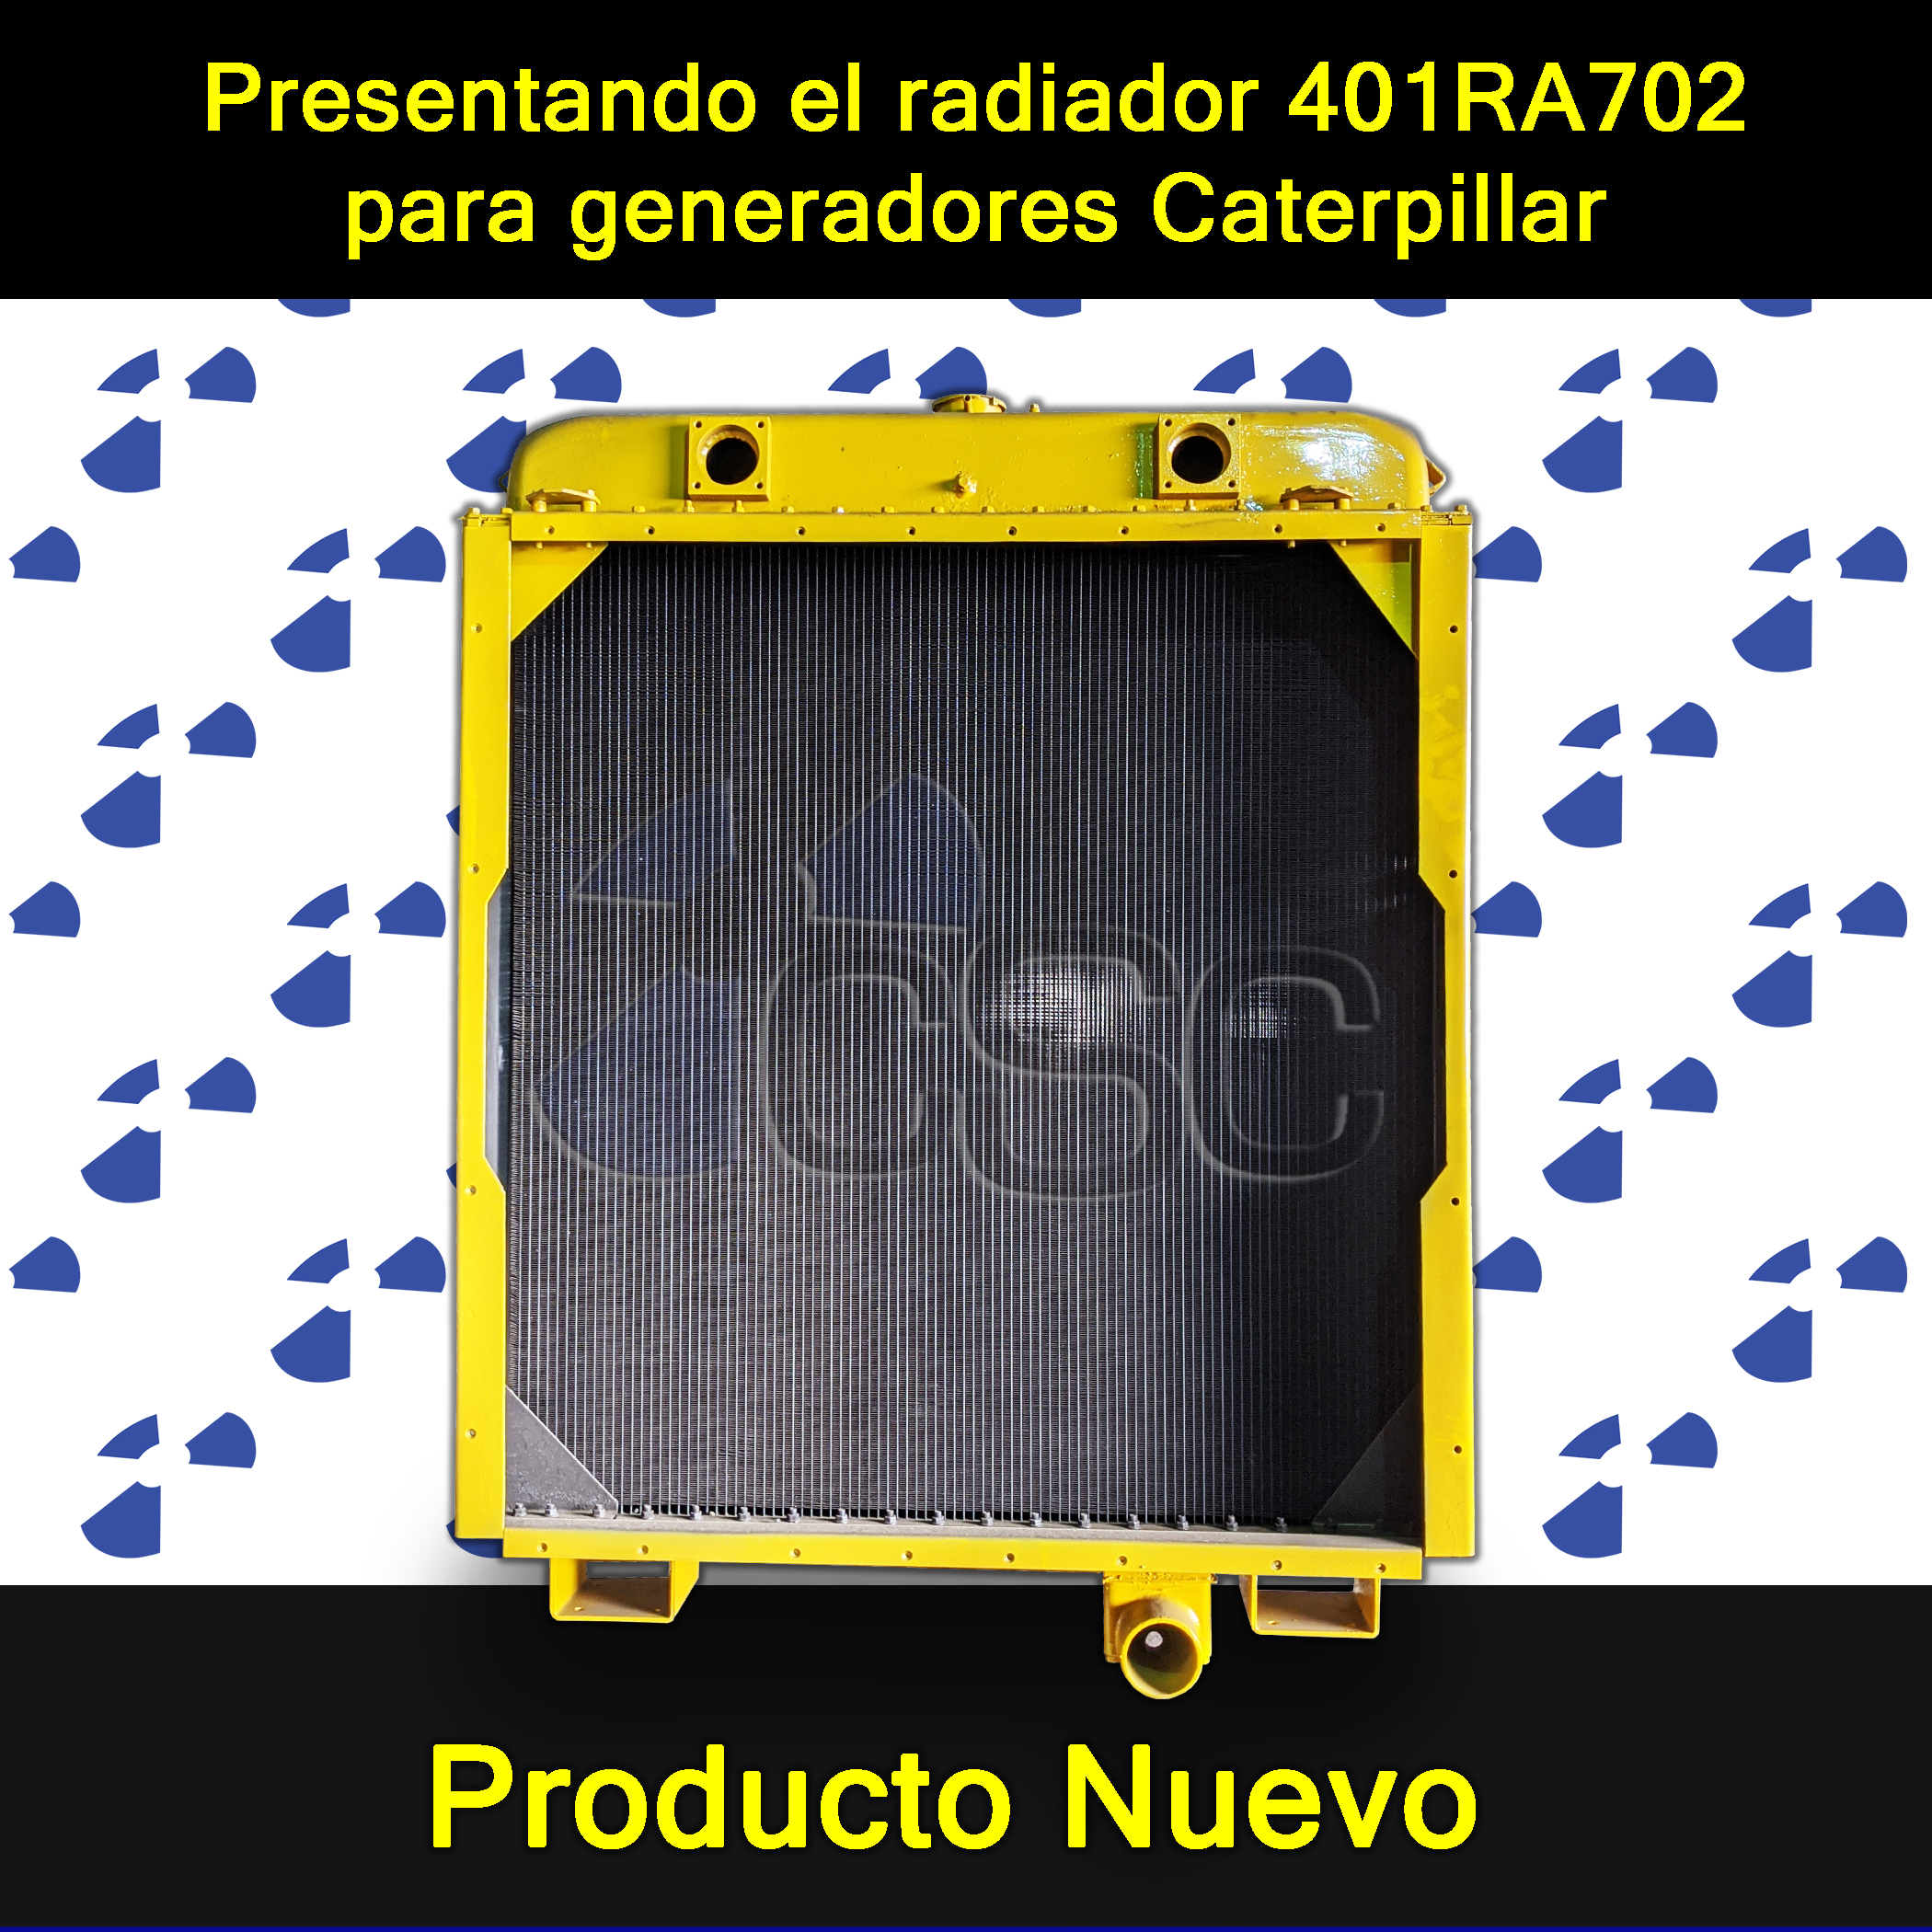 Presentamos el radiador 401RA702 para generadores Caterpillar